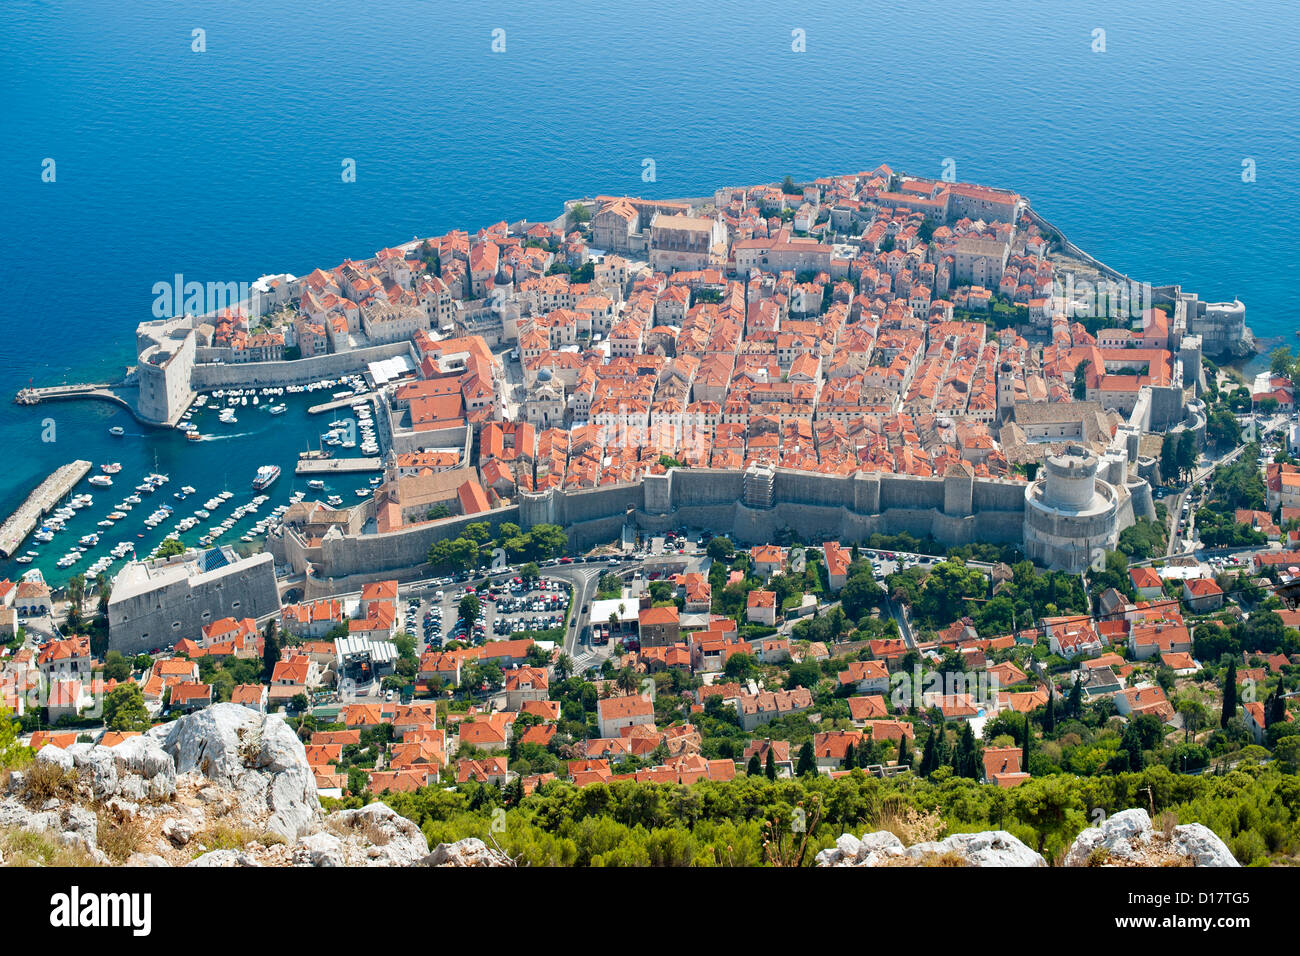 Vue depuis le mont Srd de la vieille ville de la ville de Dubrovnik, sur la côte Adriatique de Croatie. Banque D'Images